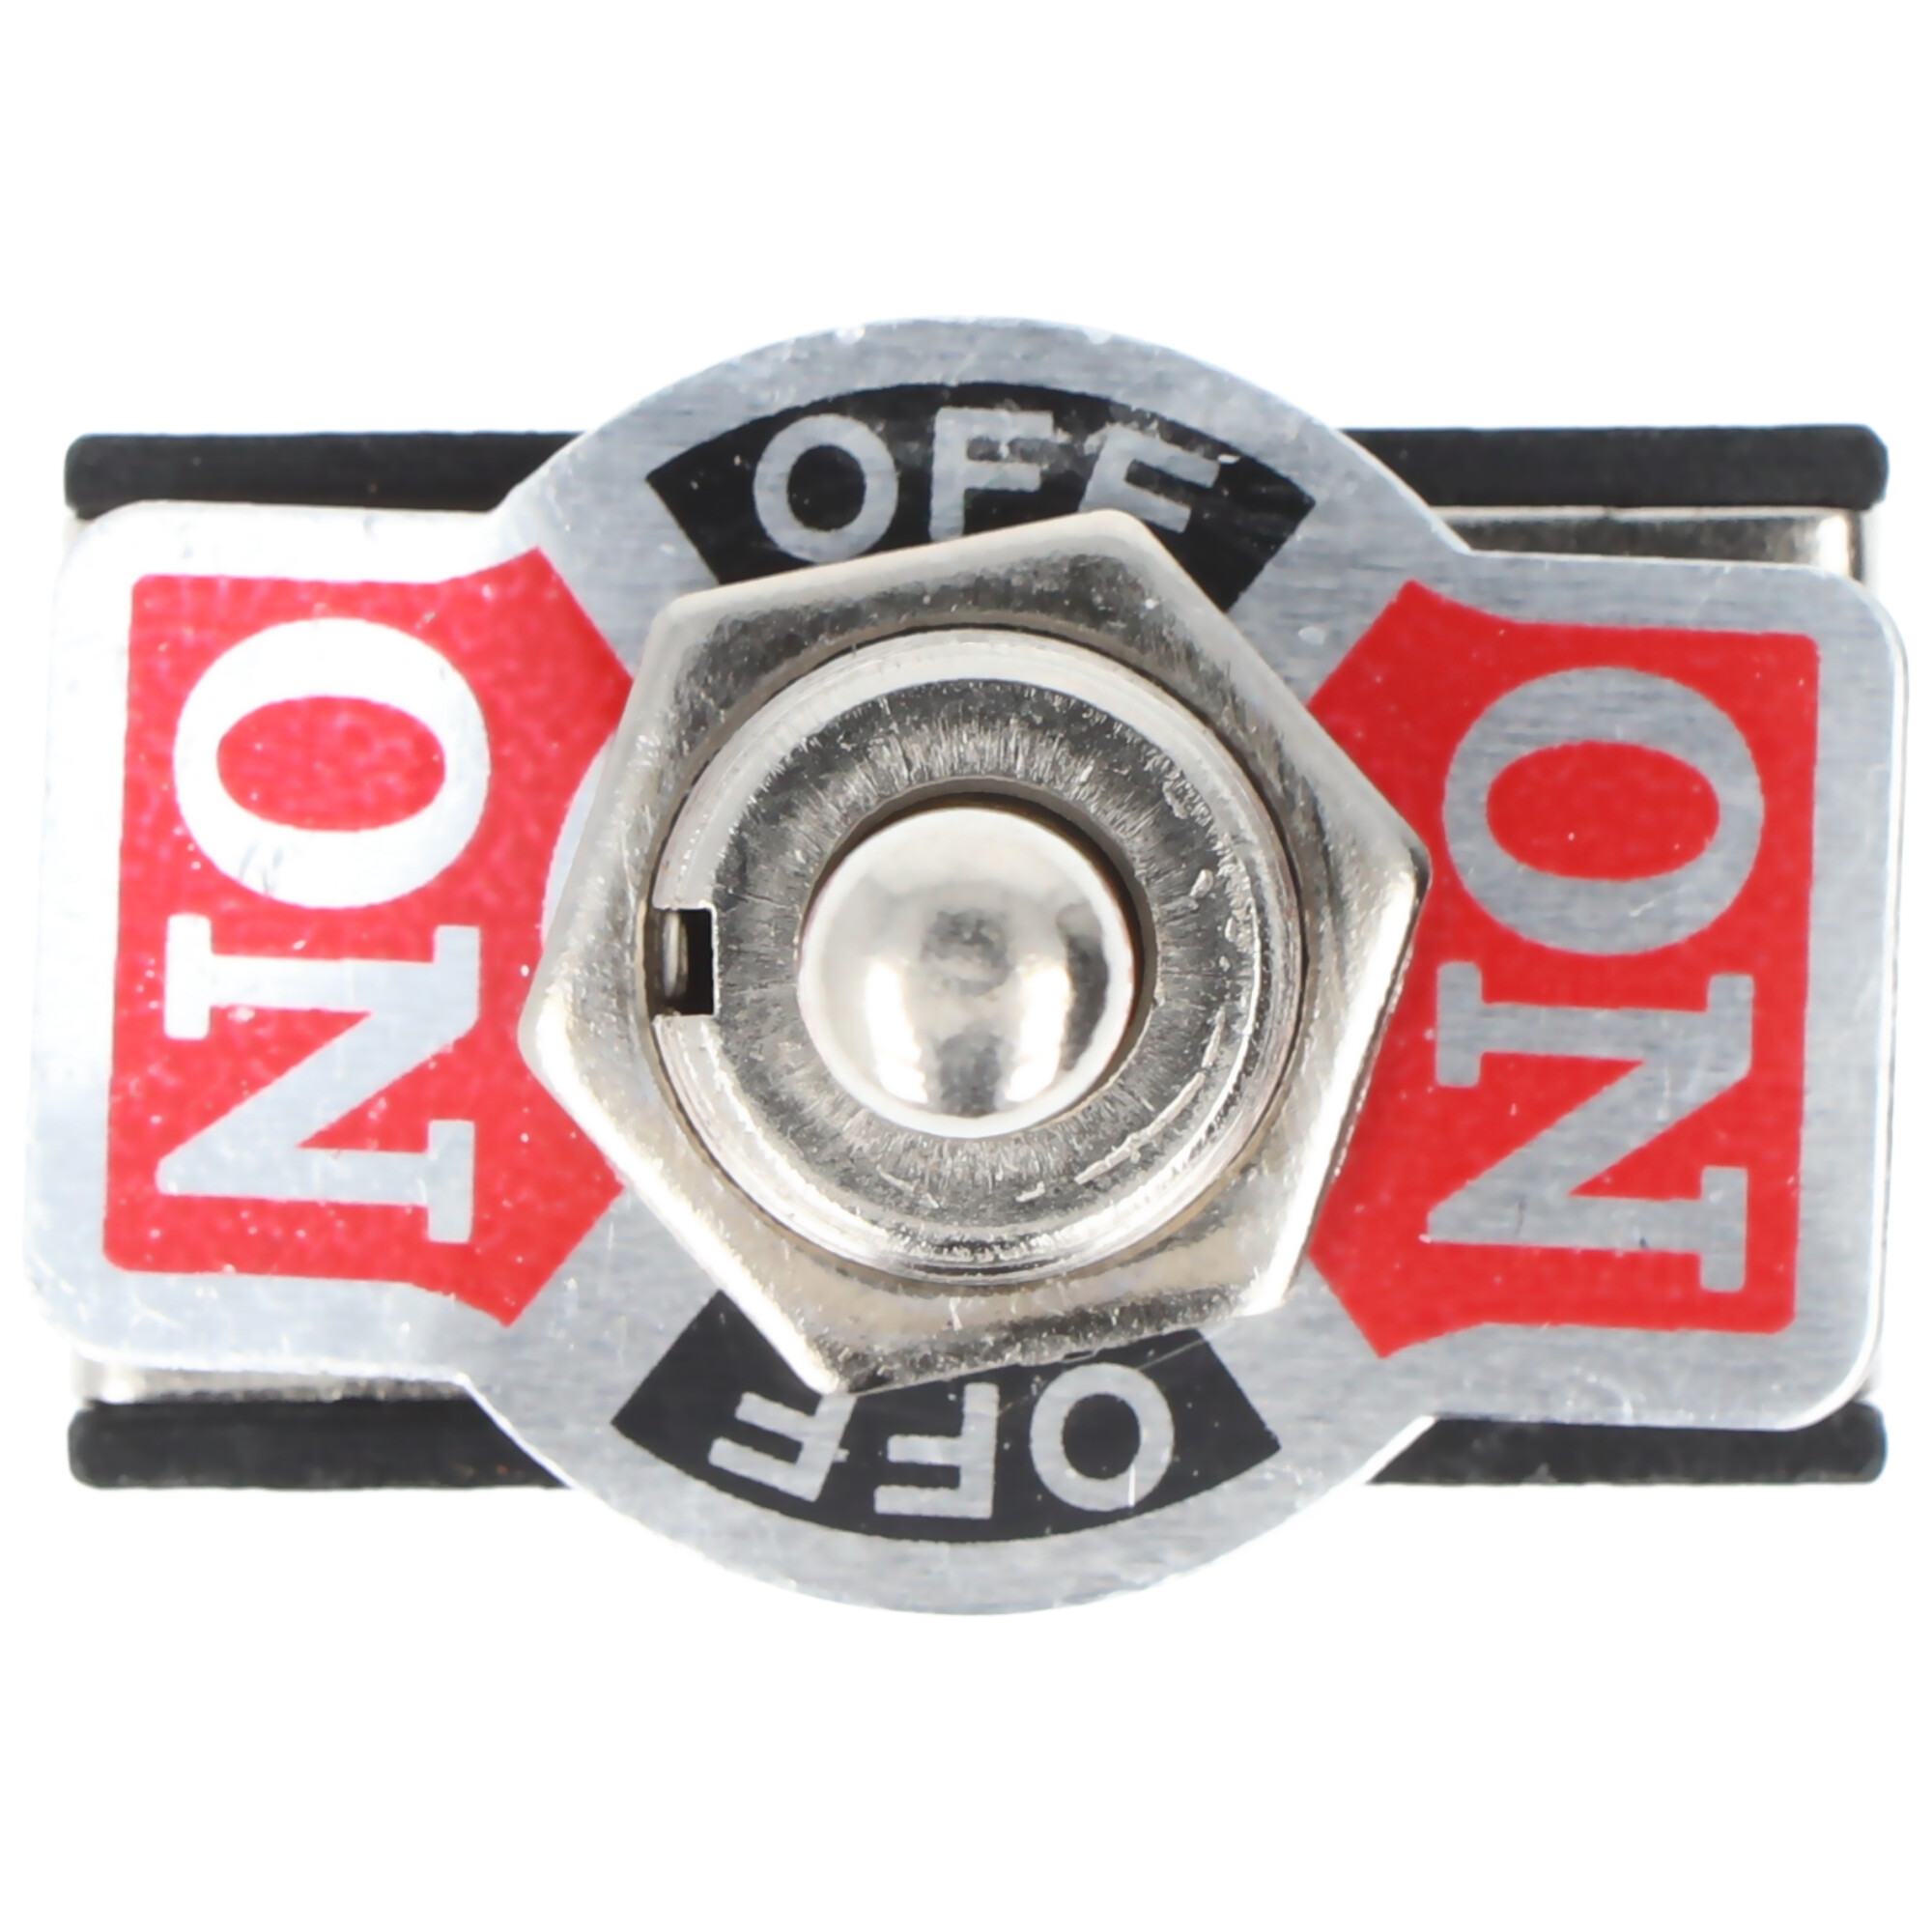 Goobay Kippschalter Miniatur, 2x EIN – AUS – EIN, 6 Pins mit Schraubanschlüssen - ideal für den Bereich DIY oder den Modellbau